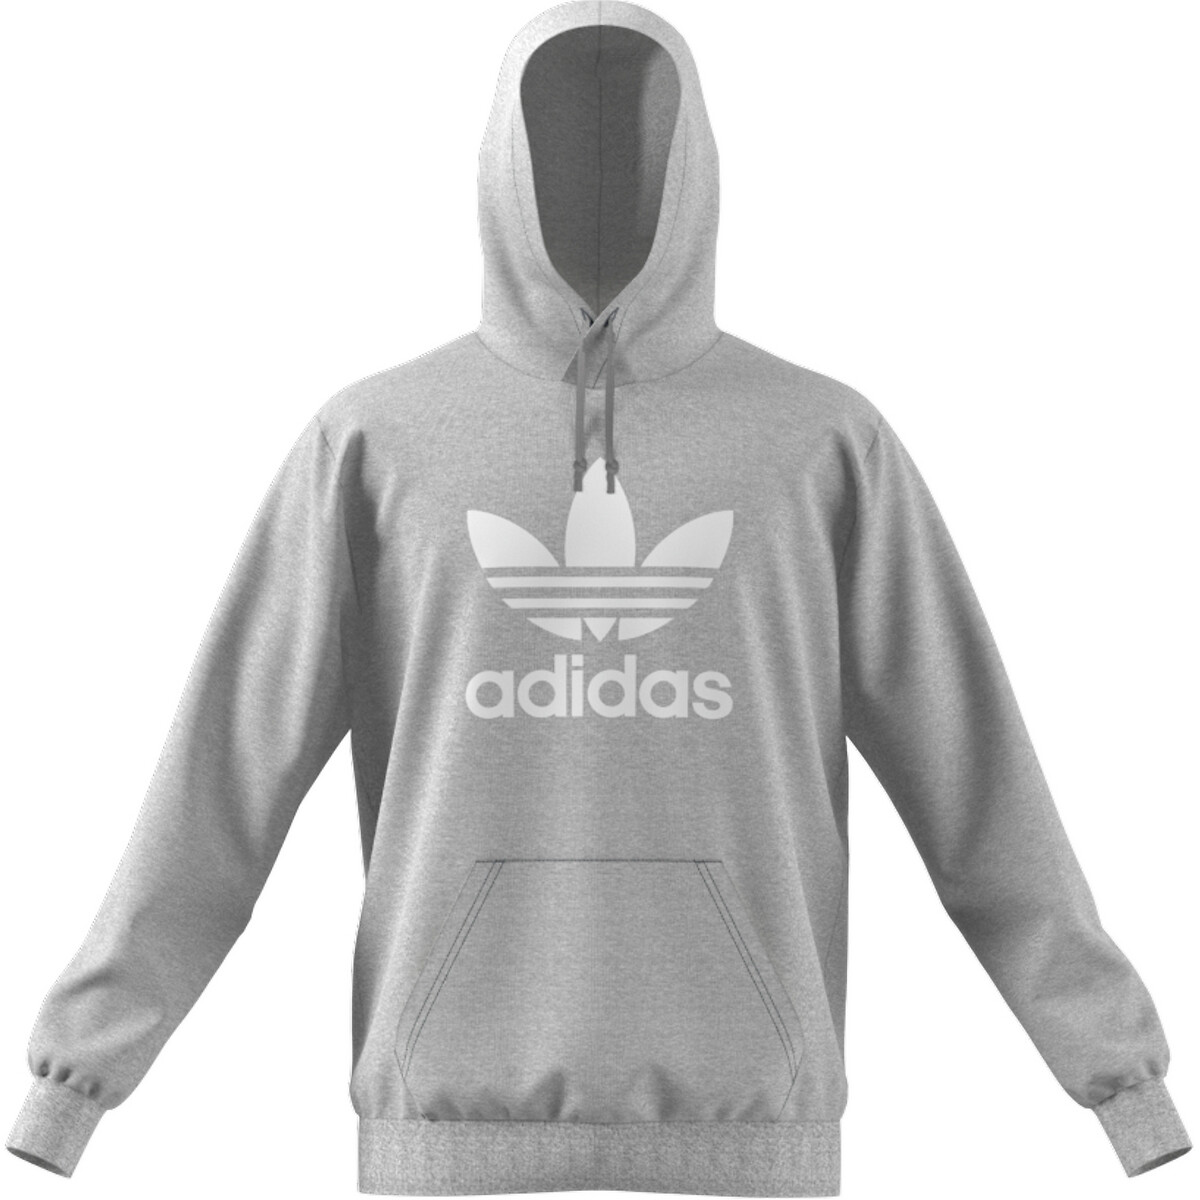 sla Beschuldiging wees gegroet Hoodie met trefoil logo grijs Adidas Originals | La Redoute